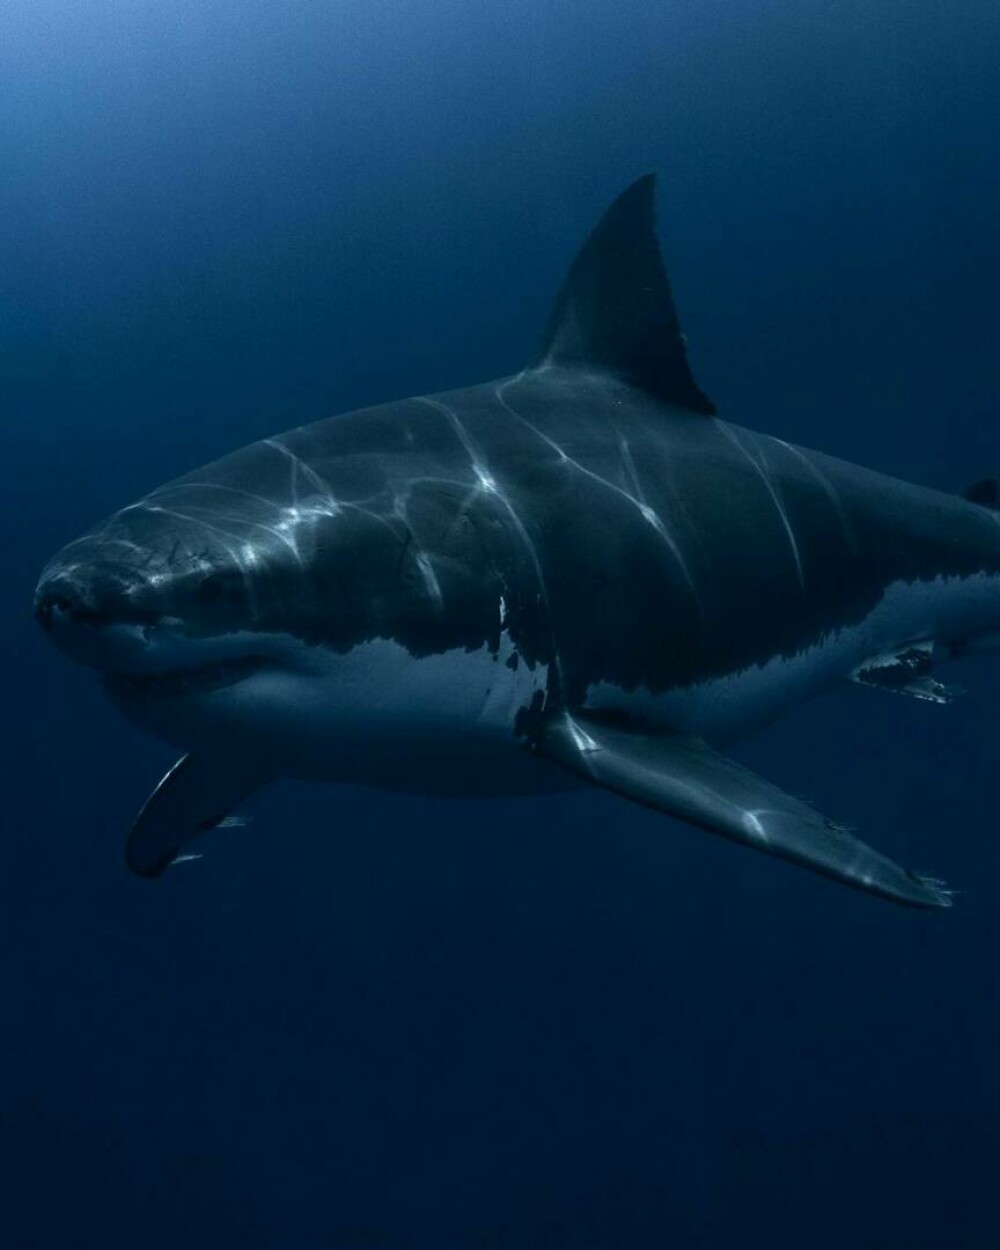 Imagini uimitoare surprinse de supraviețuitorul atacului unui rechin. Fotografiază prădătorii de aproape | GALERIE FOTO - Imaginea 8